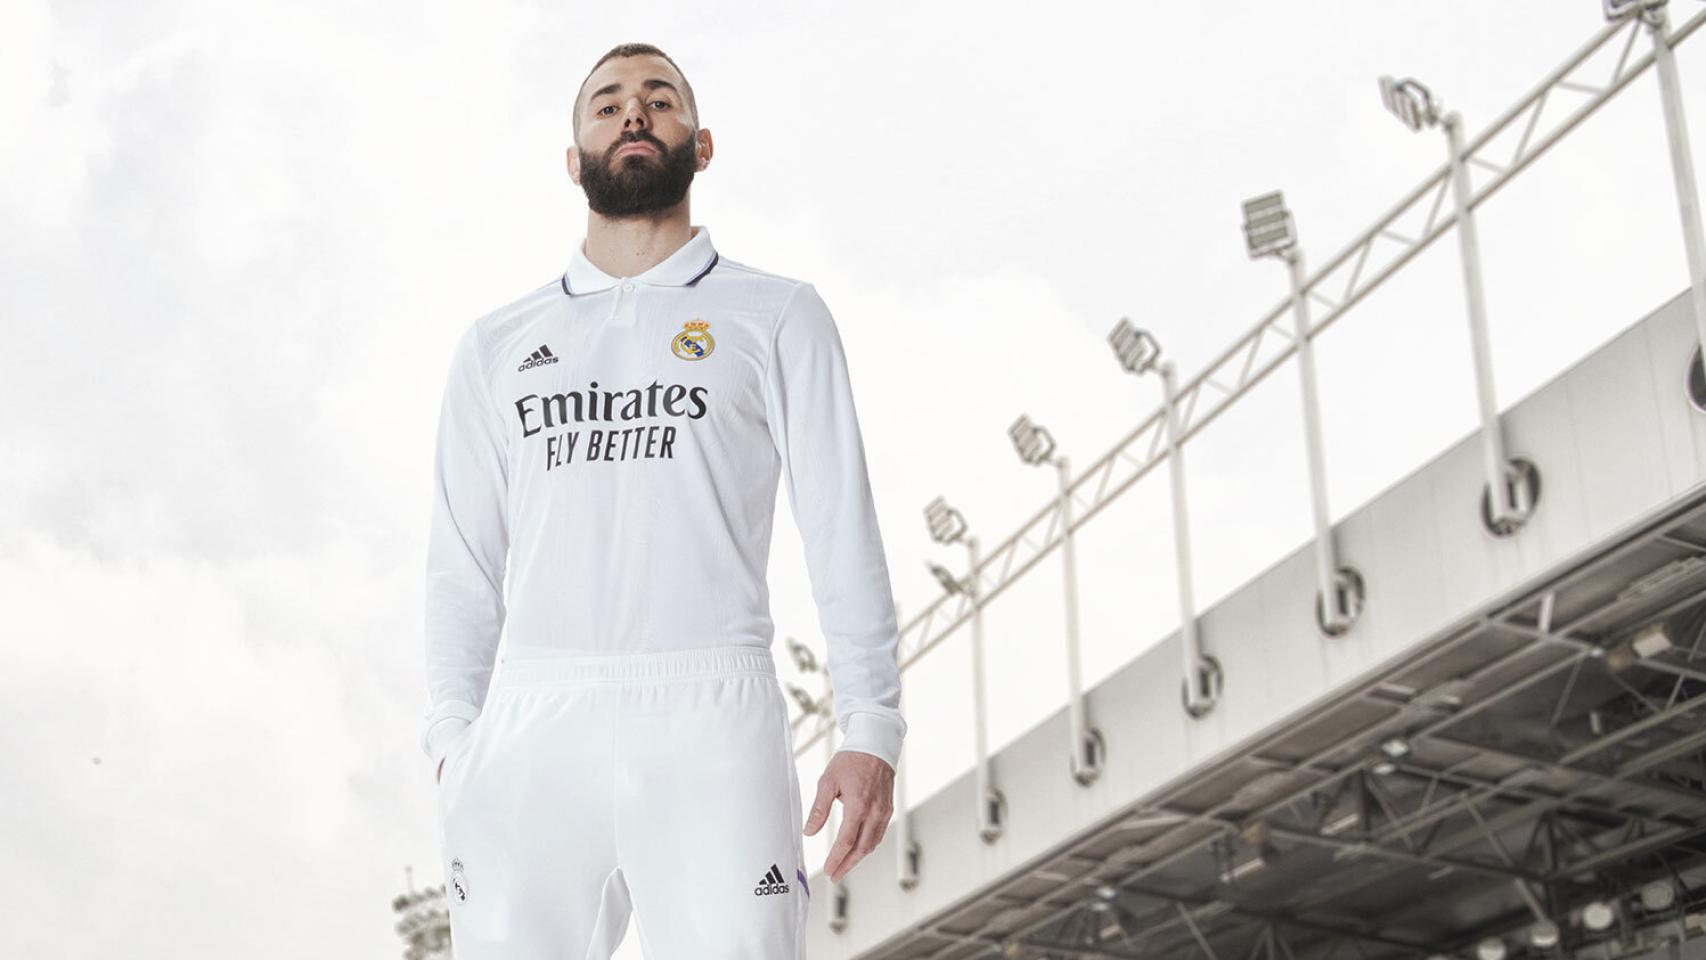 El Real Madrid presenta su equipación para la temporada 2022/2023: homenaje  a los 120 años y un despliegue de leyendas